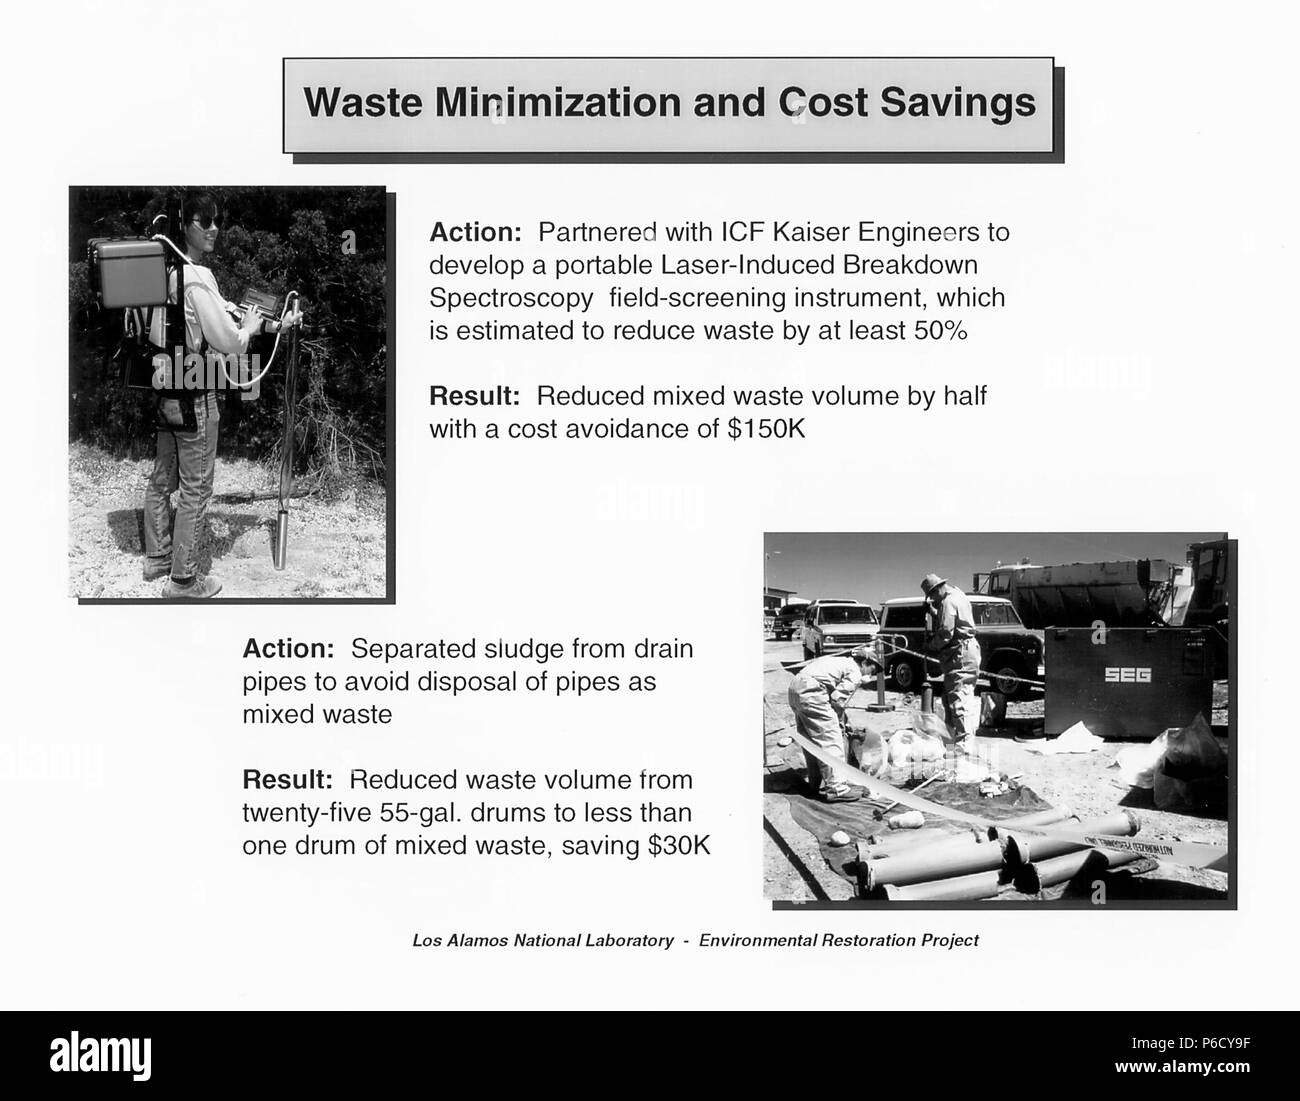 Ahorro de costes y minimización de residuos propuesta por Los Alamos National Library para el proyecto de restauración ambiental de Los Alamos, Nuevo México, 2016. Imagen cortesía del Departamento de Energía de Estados Unidos. () Foto de stock